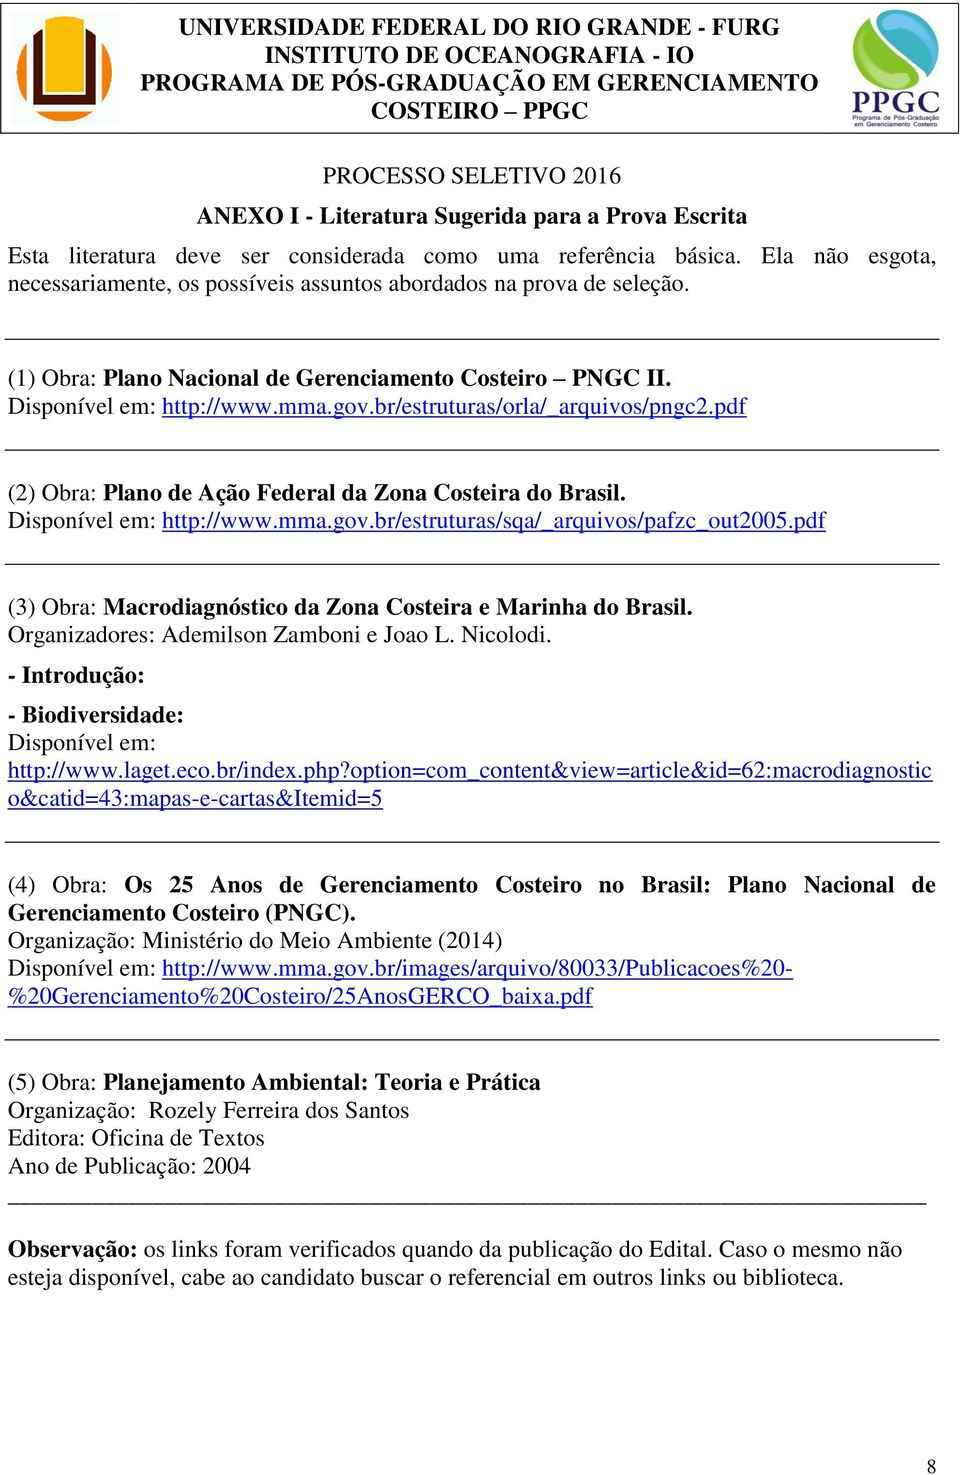 (1) Obra: Plano Nacional de Gerenciamento Costeiro PNGC II. Disponível em: http://www.mma.gov.br/estruturas/orla/_arquivos/pngc2.pdf (2) Obra: Plano de Ação Federal da Zona Costeira do Brasil.